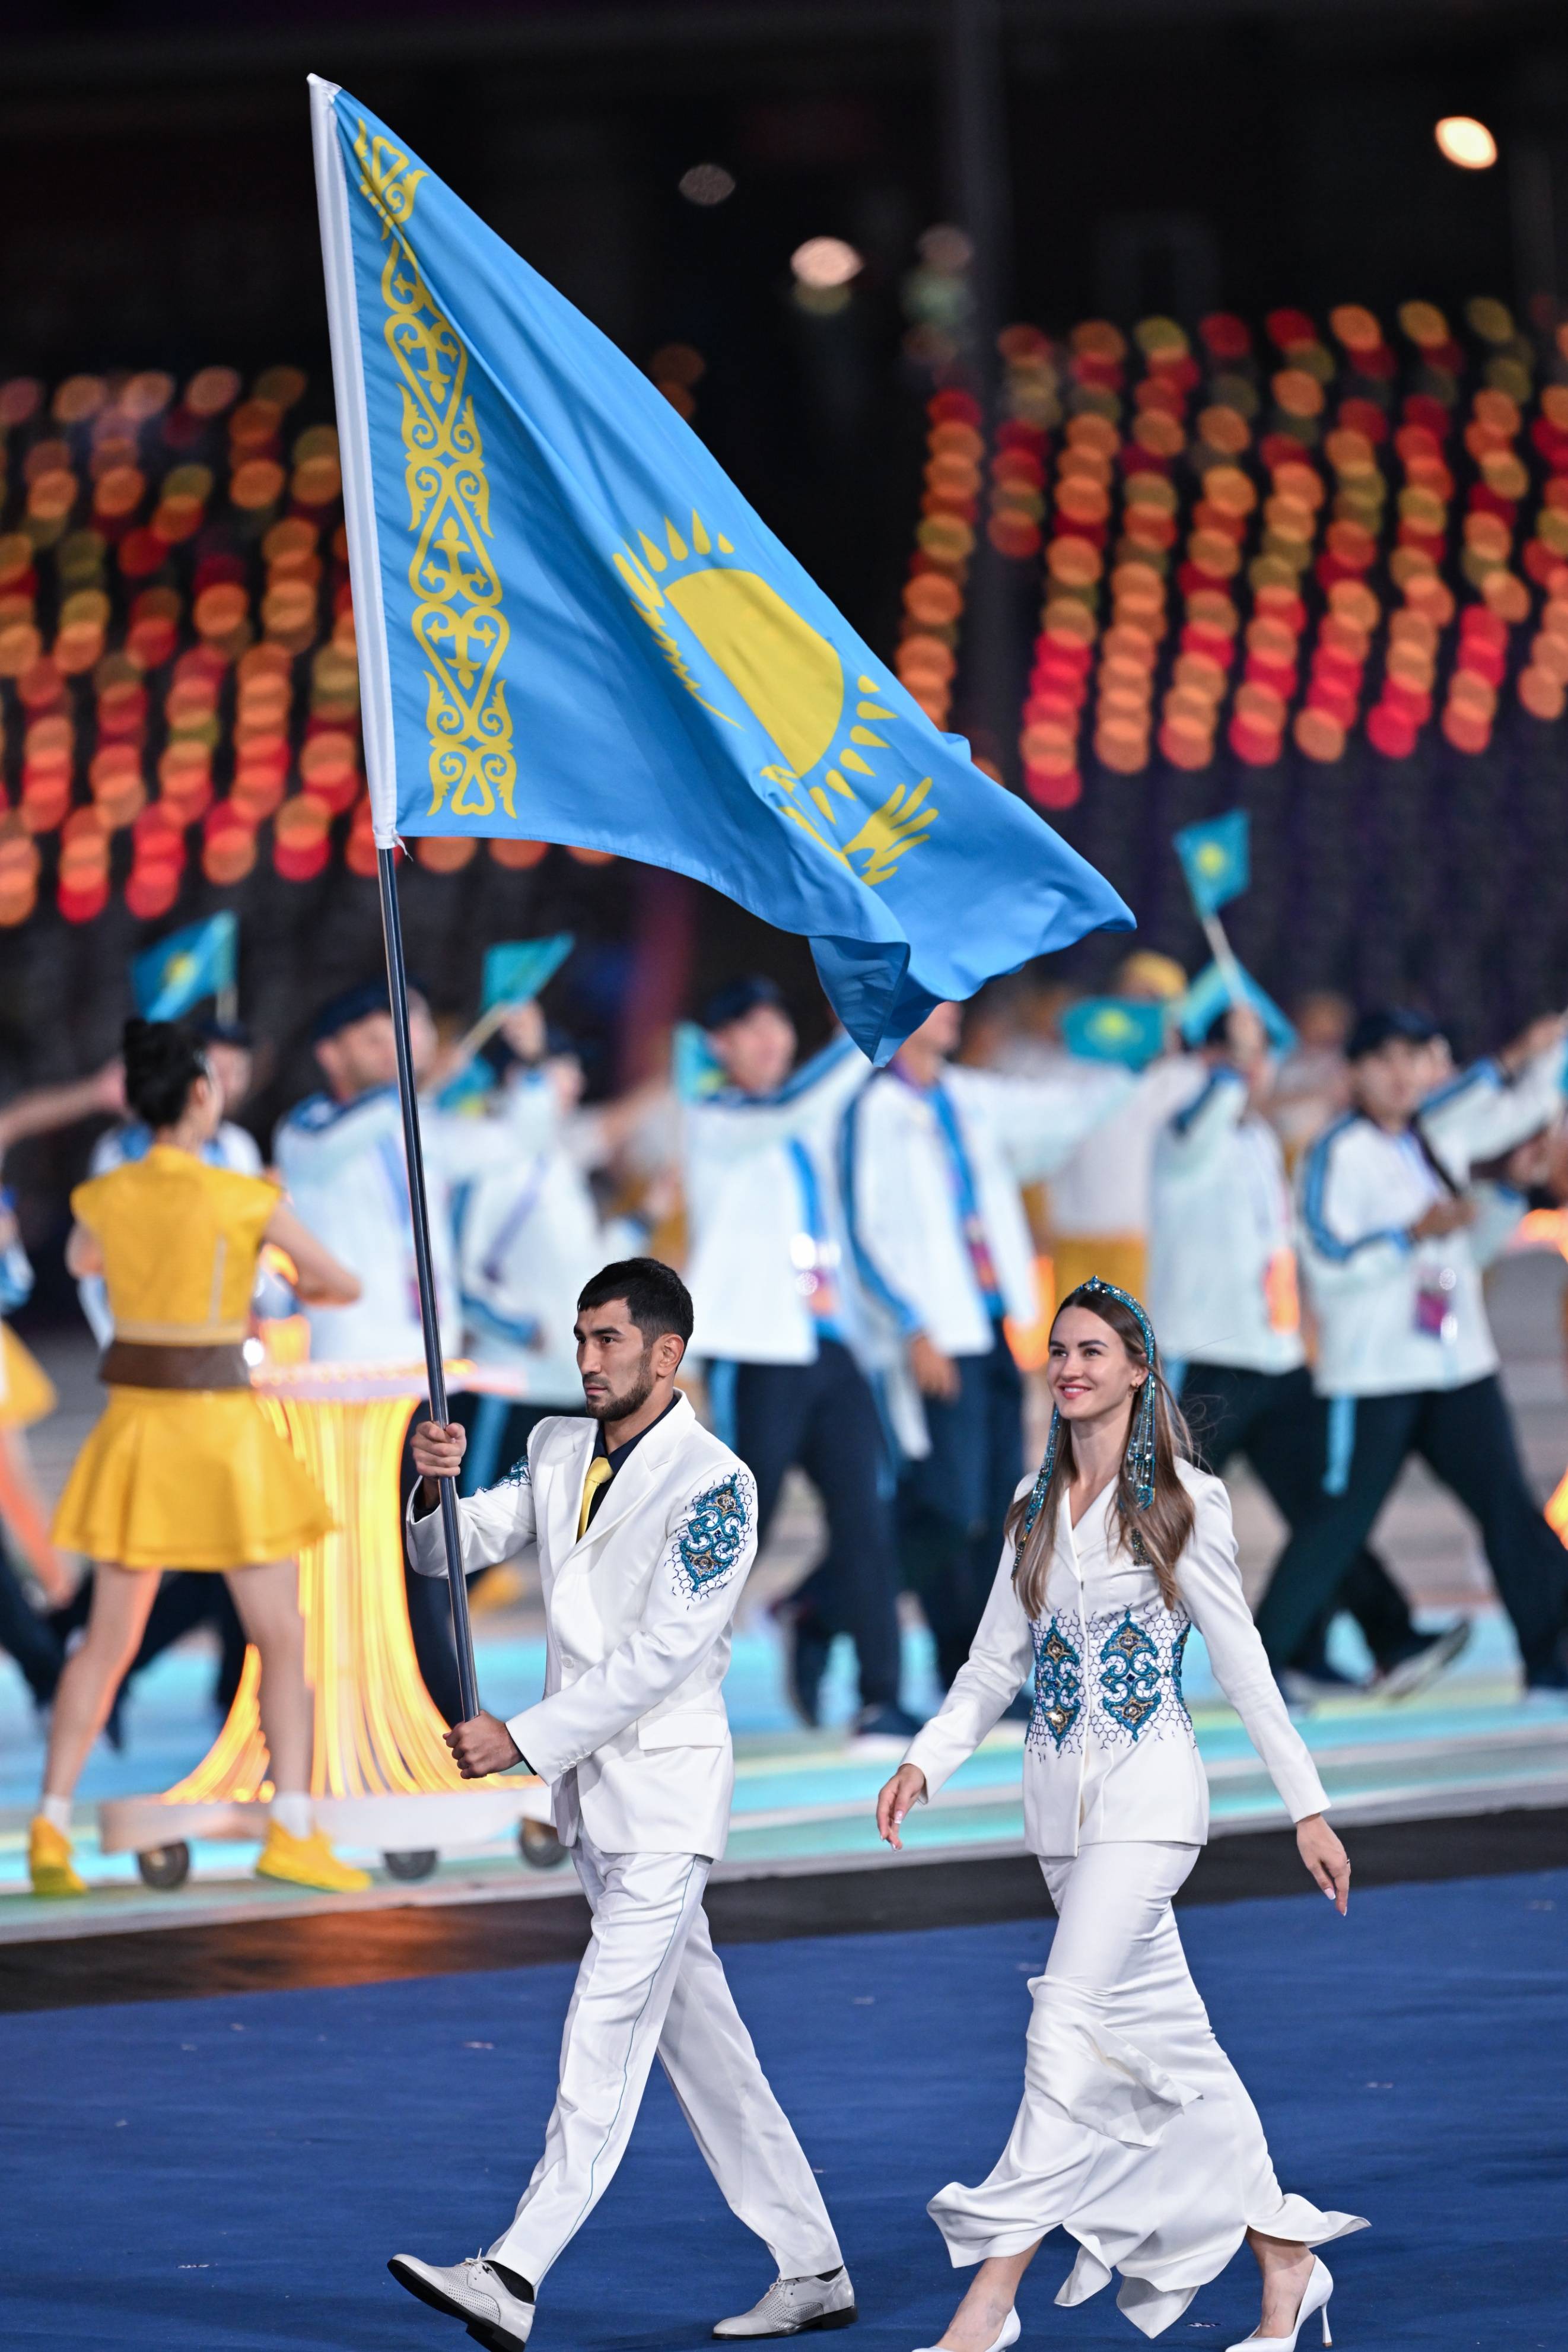 杭州亚运会开幕,哈萨克斯坦美女旗手抢镜,白鹭造型领舞美女惊艳